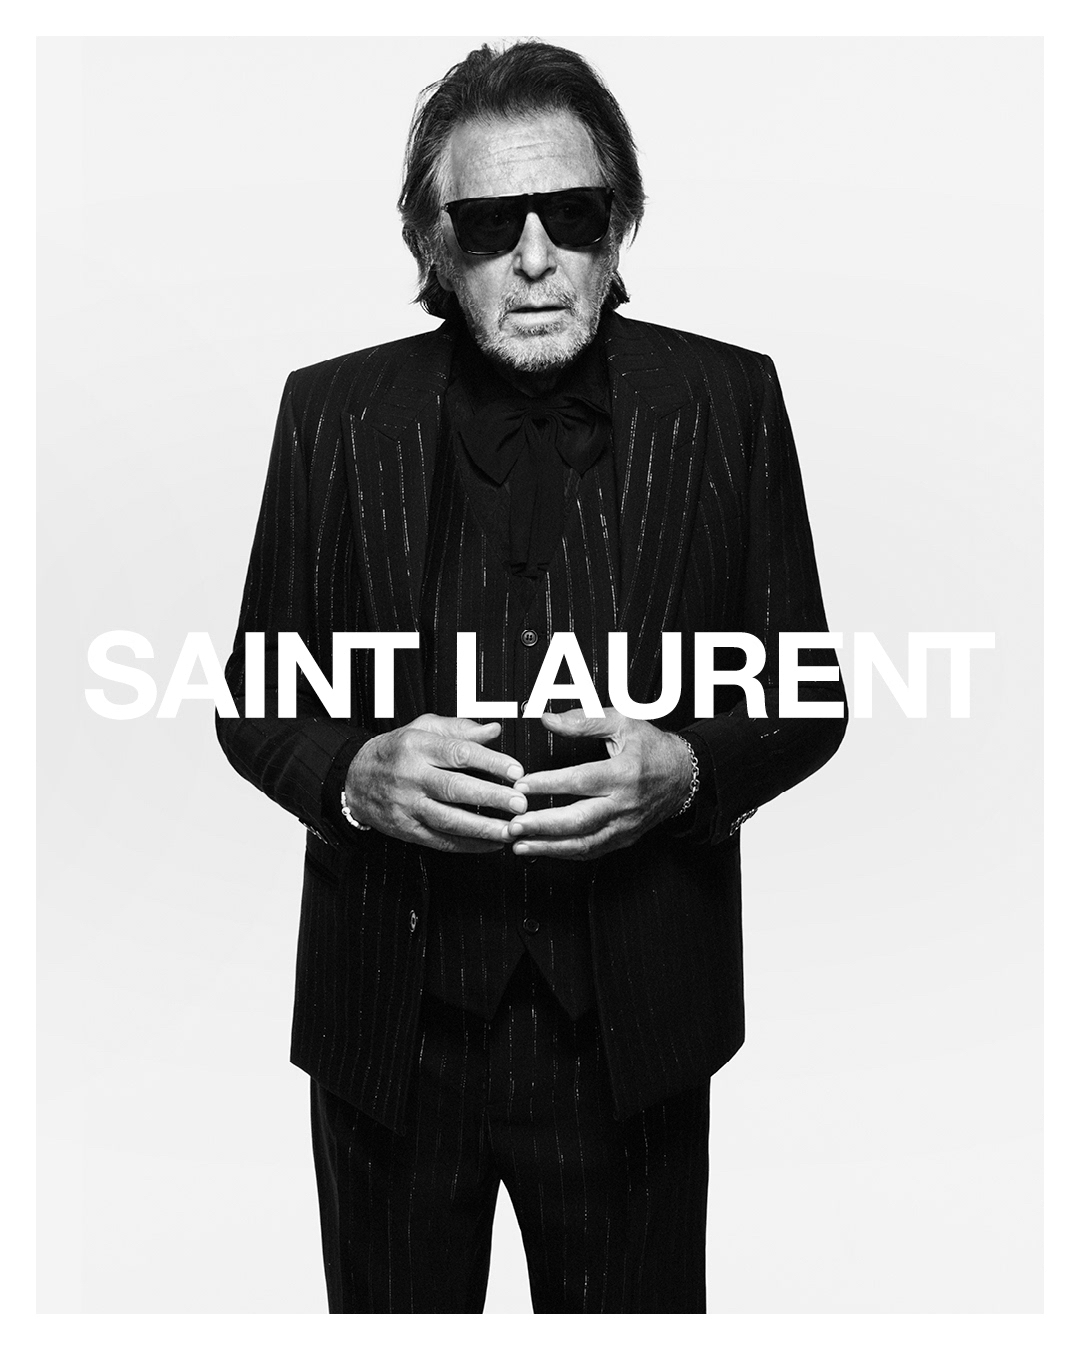 Saint Laurent Al Pacino